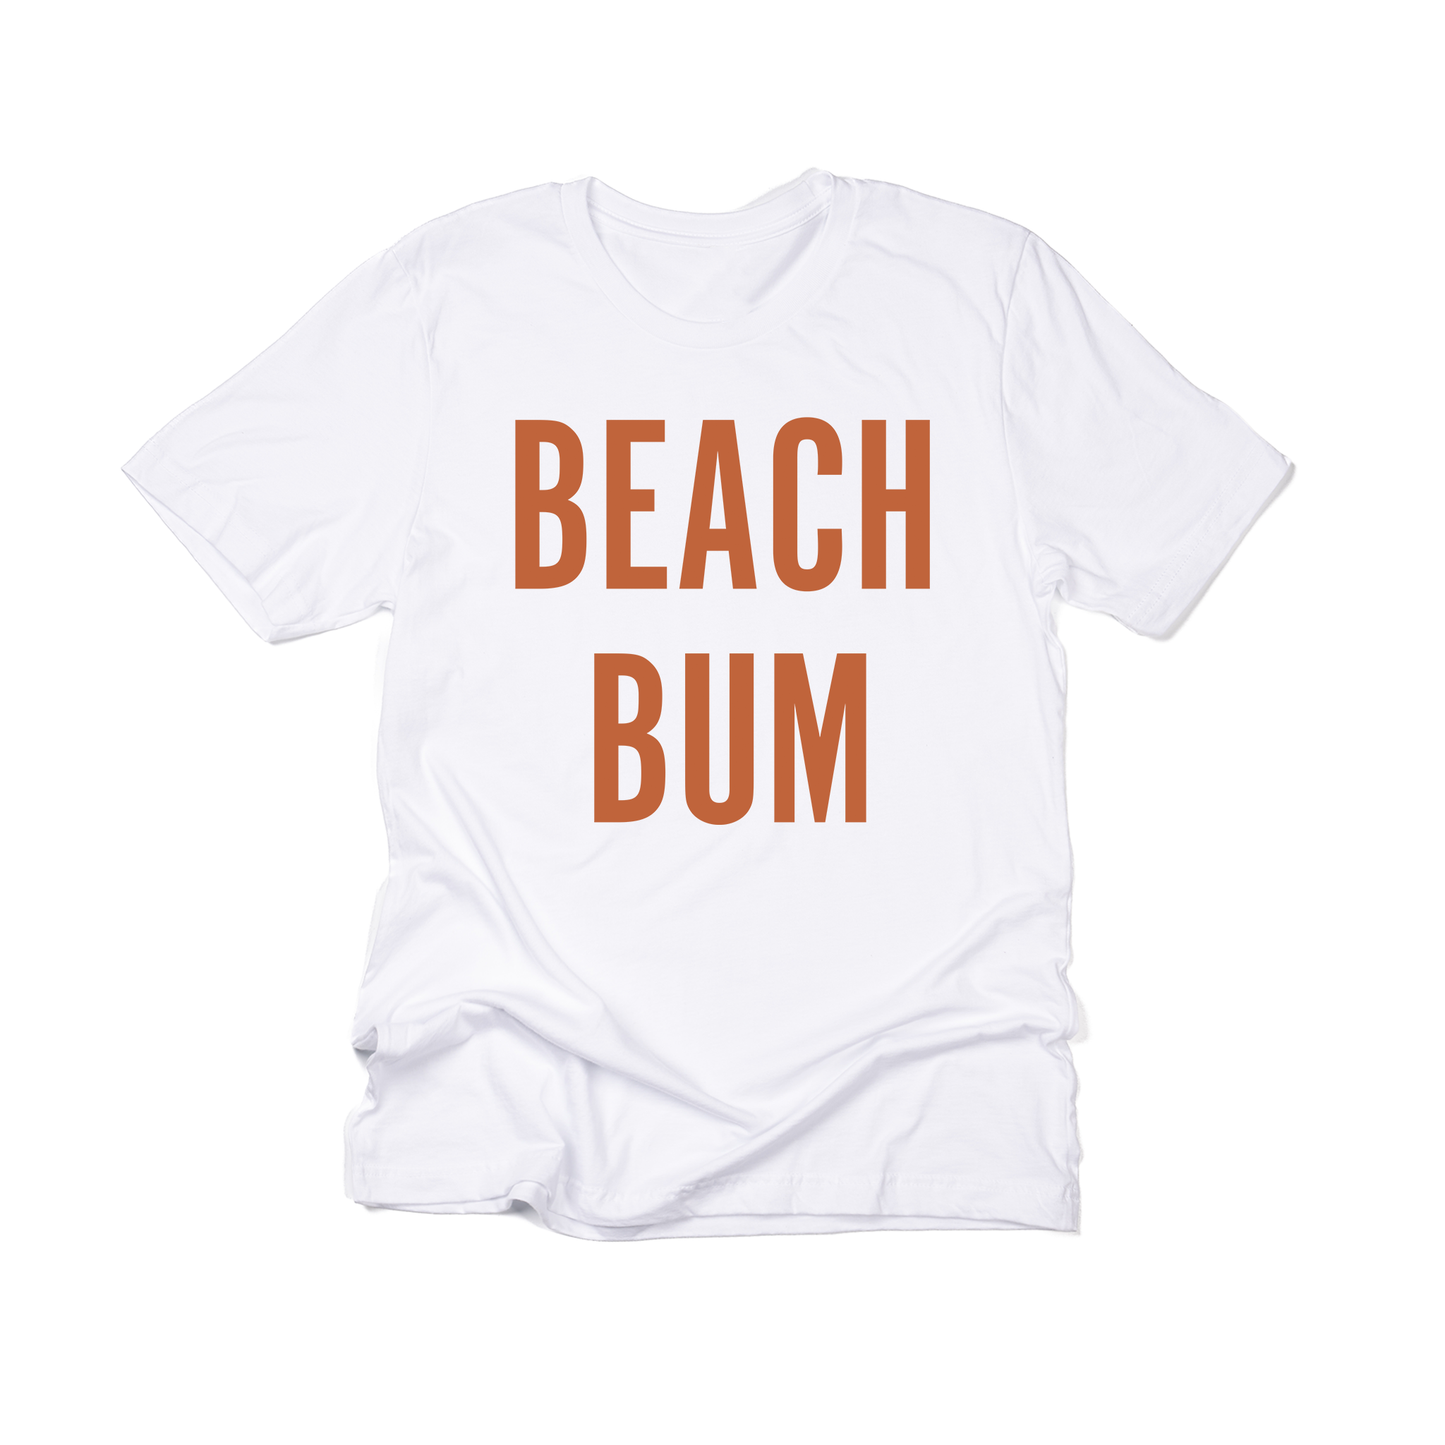 BEACH BUM (Rust) - Tee (White)